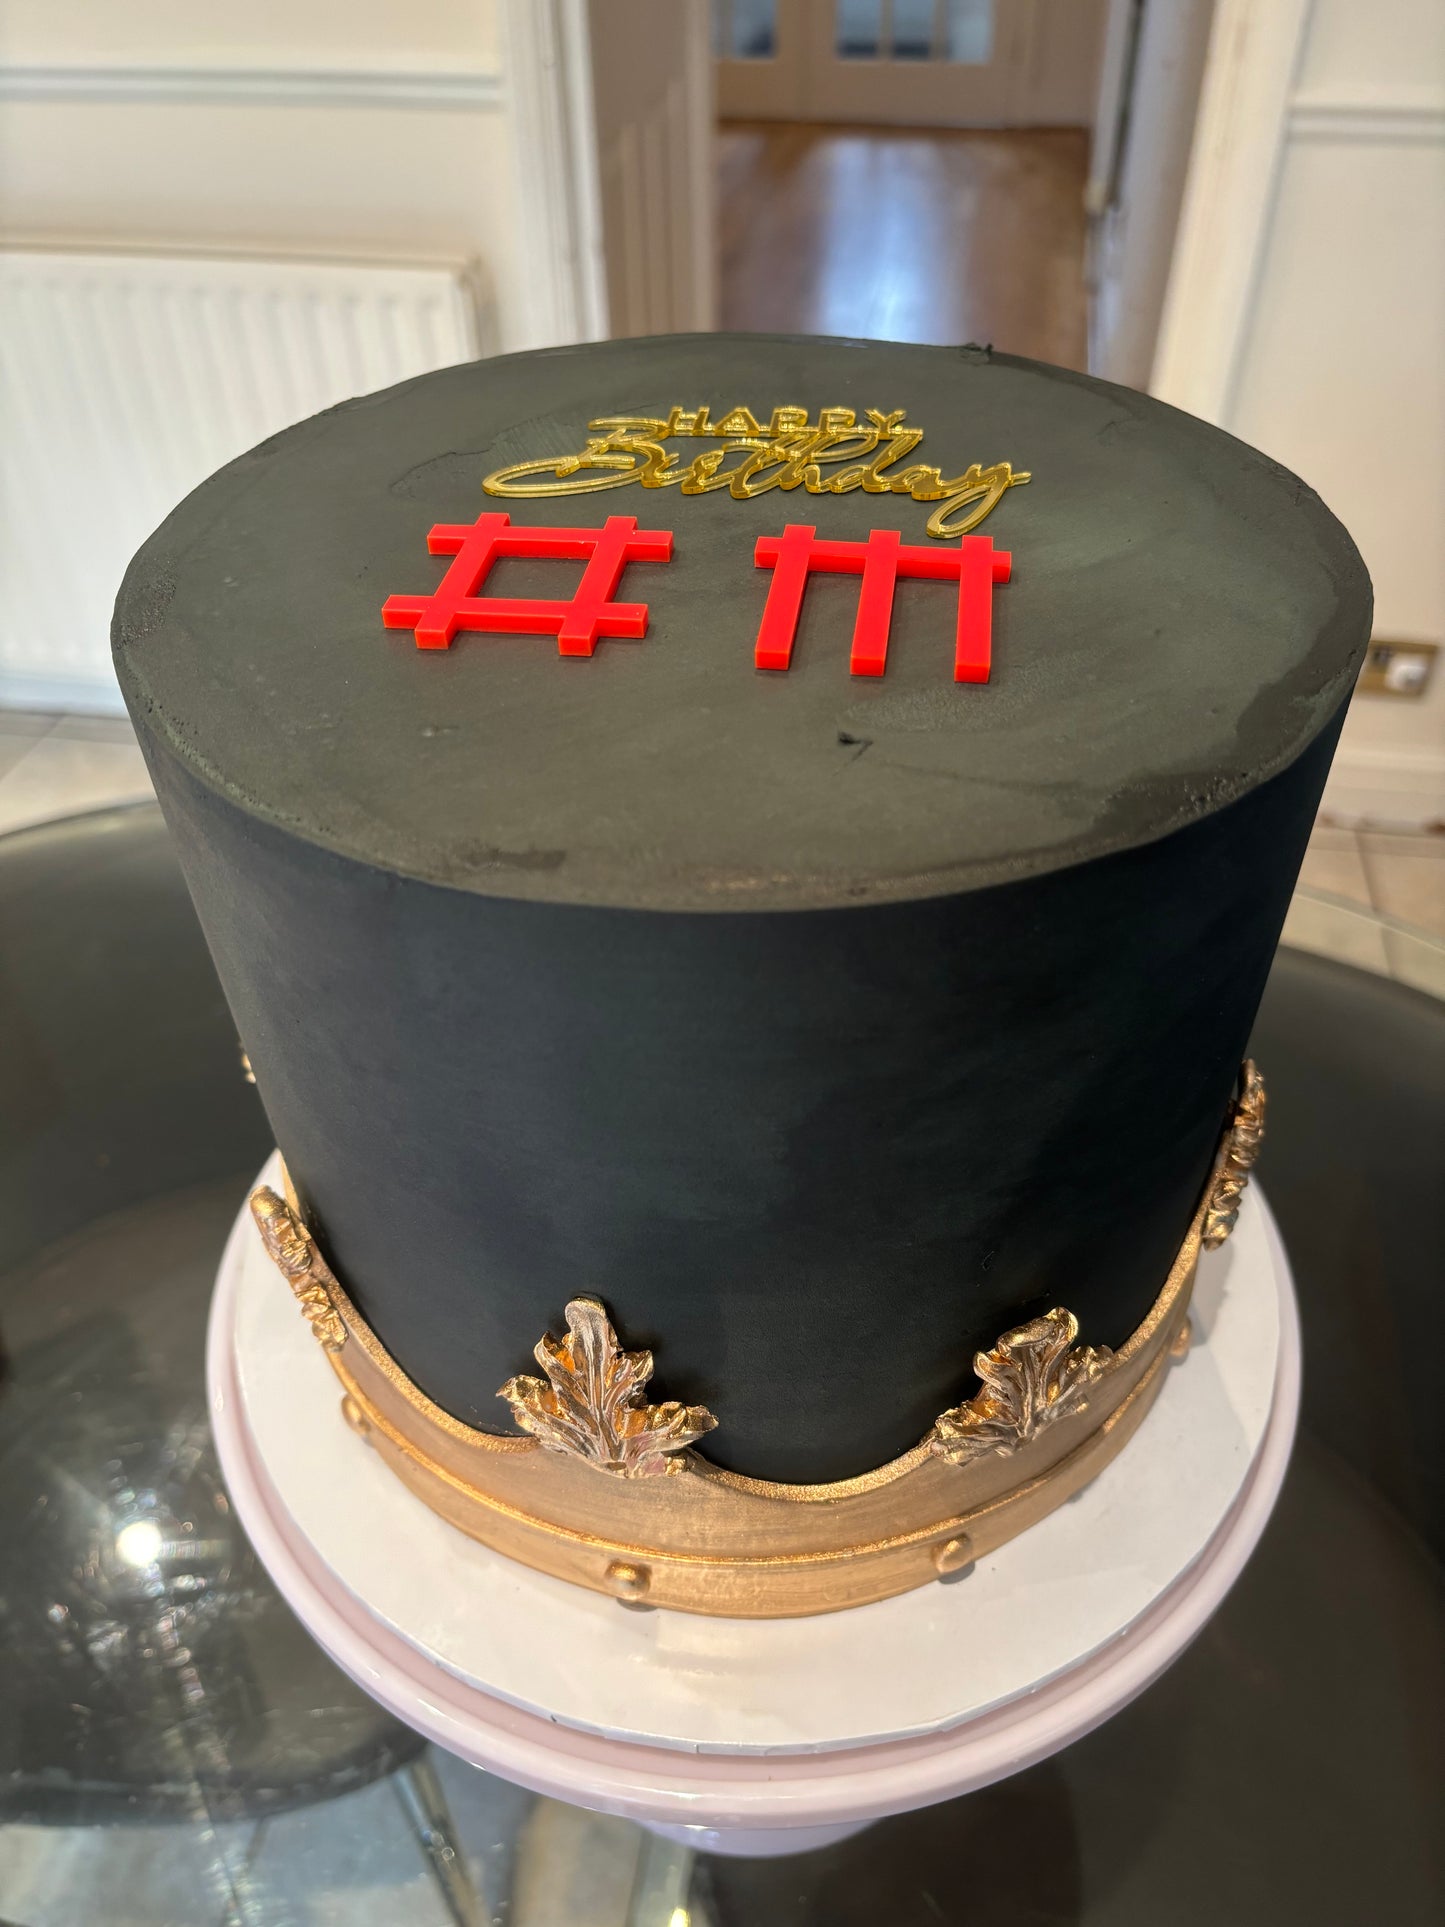 Depeche Mode themed cake